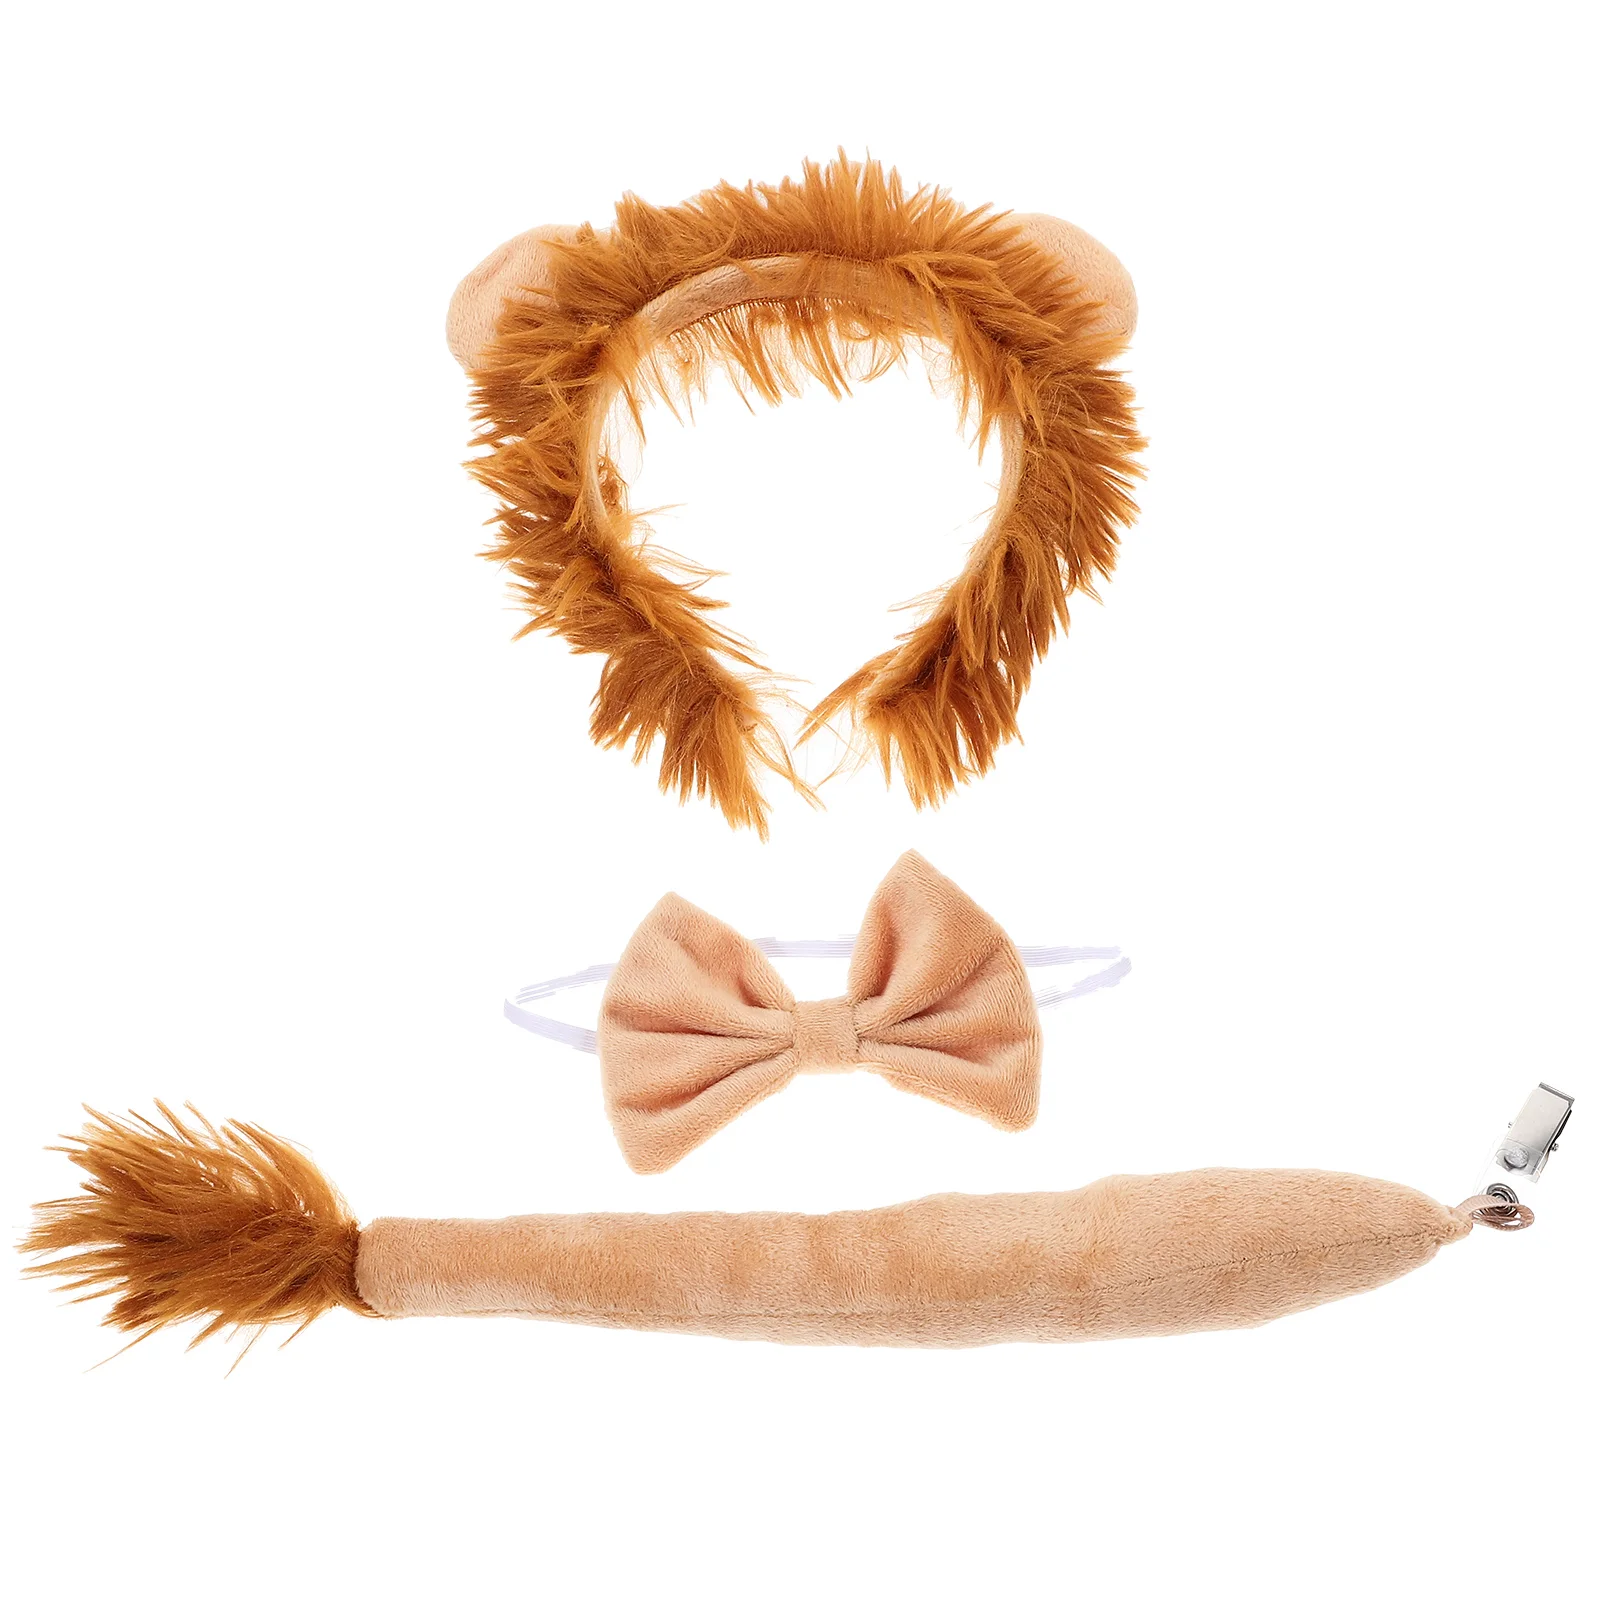 

1 комплект повязка на голову с львиными ушками, галстук-бабочка и хвост для косплея льва, реквизит для костюмированной вечеринки на Хэллоуин